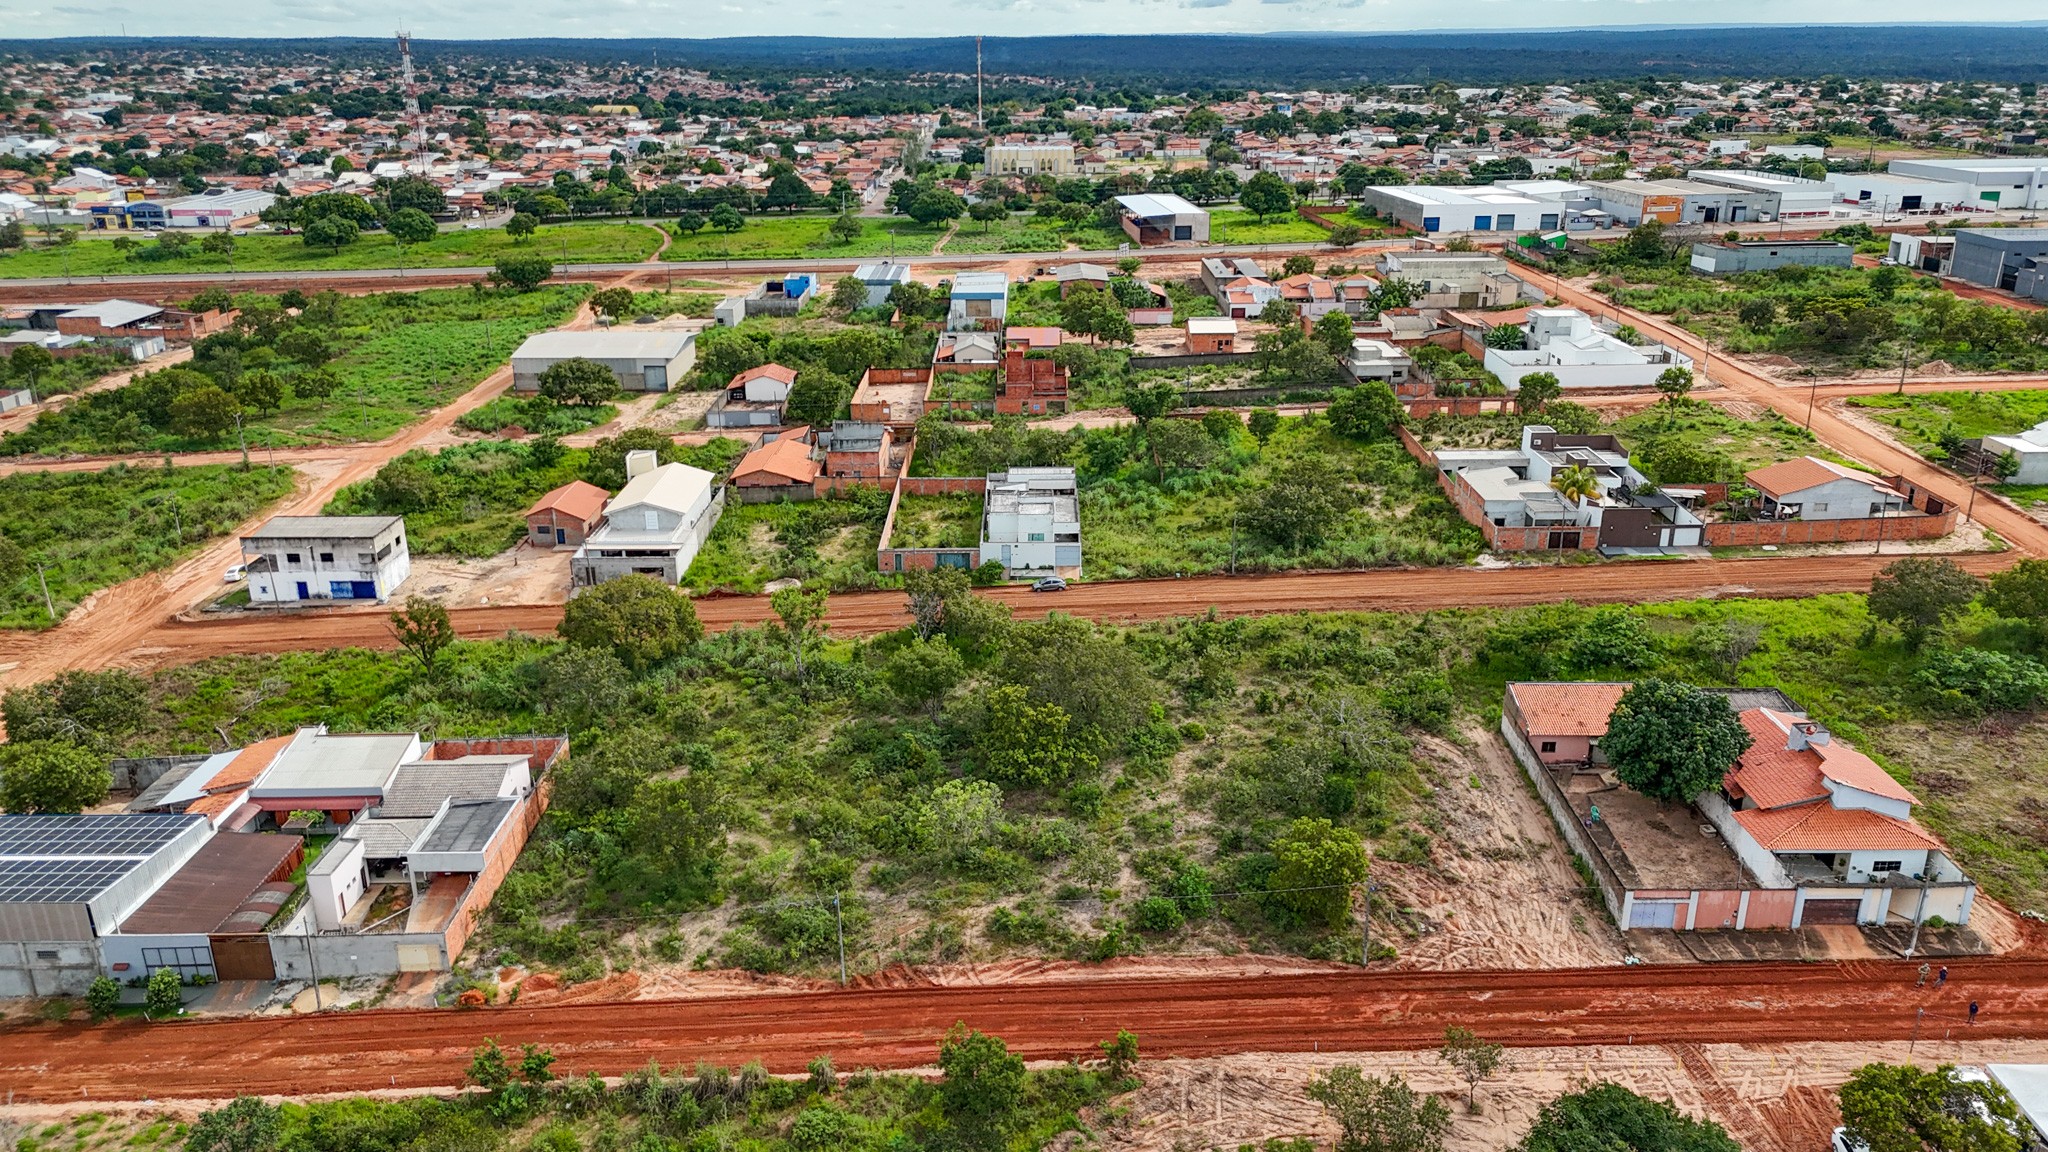 Terrenos em Araguaína serão leiloados pela prefeitura com lances iniciais de R$ 45 mil; veja regras